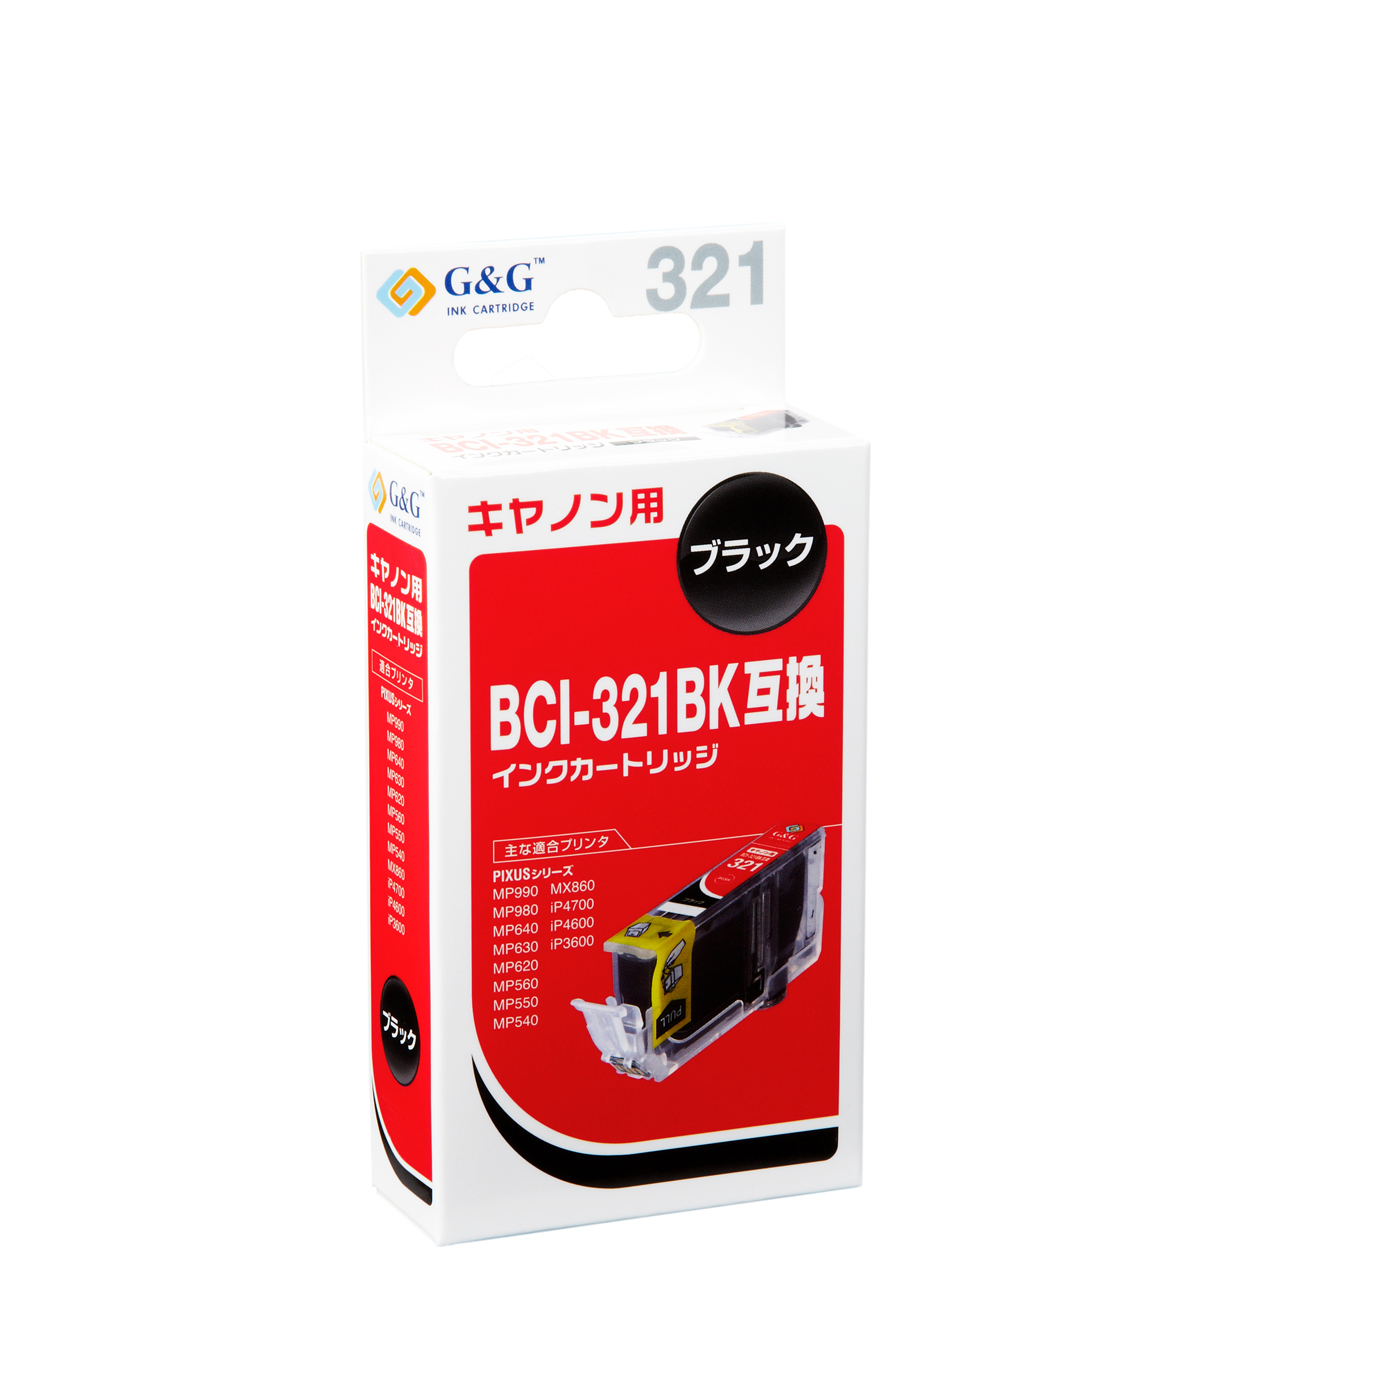 HBC-321BK